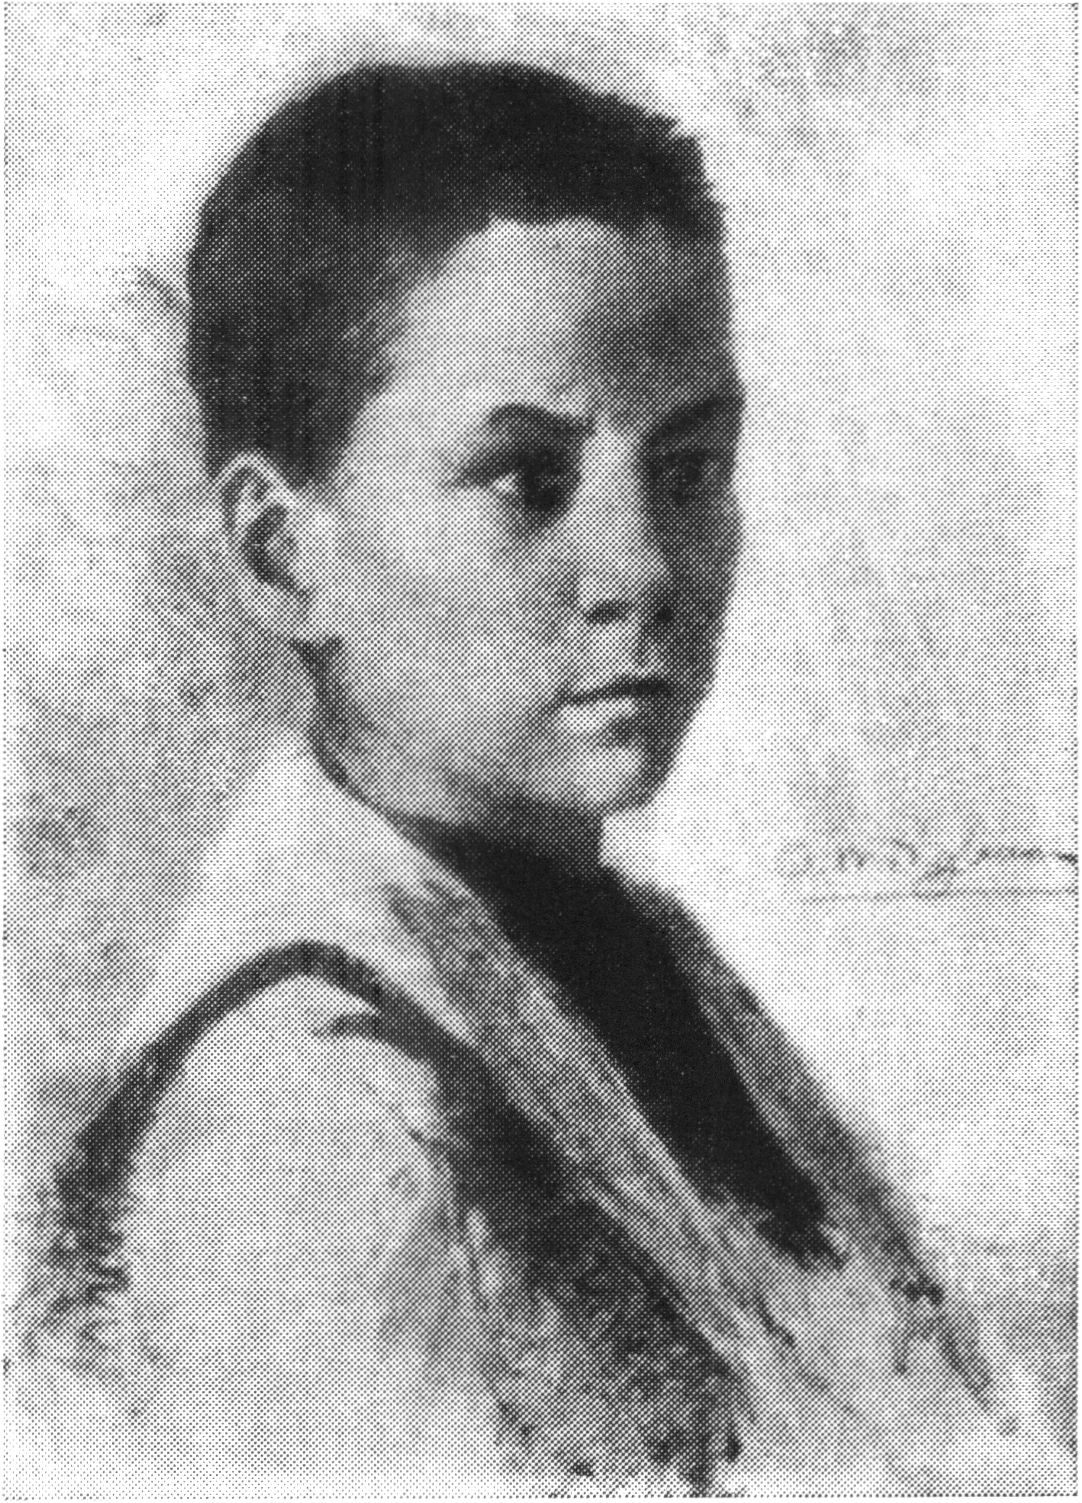 А. Модильяни. Сидящий мальчик. 1899. Одна из первых работ художника